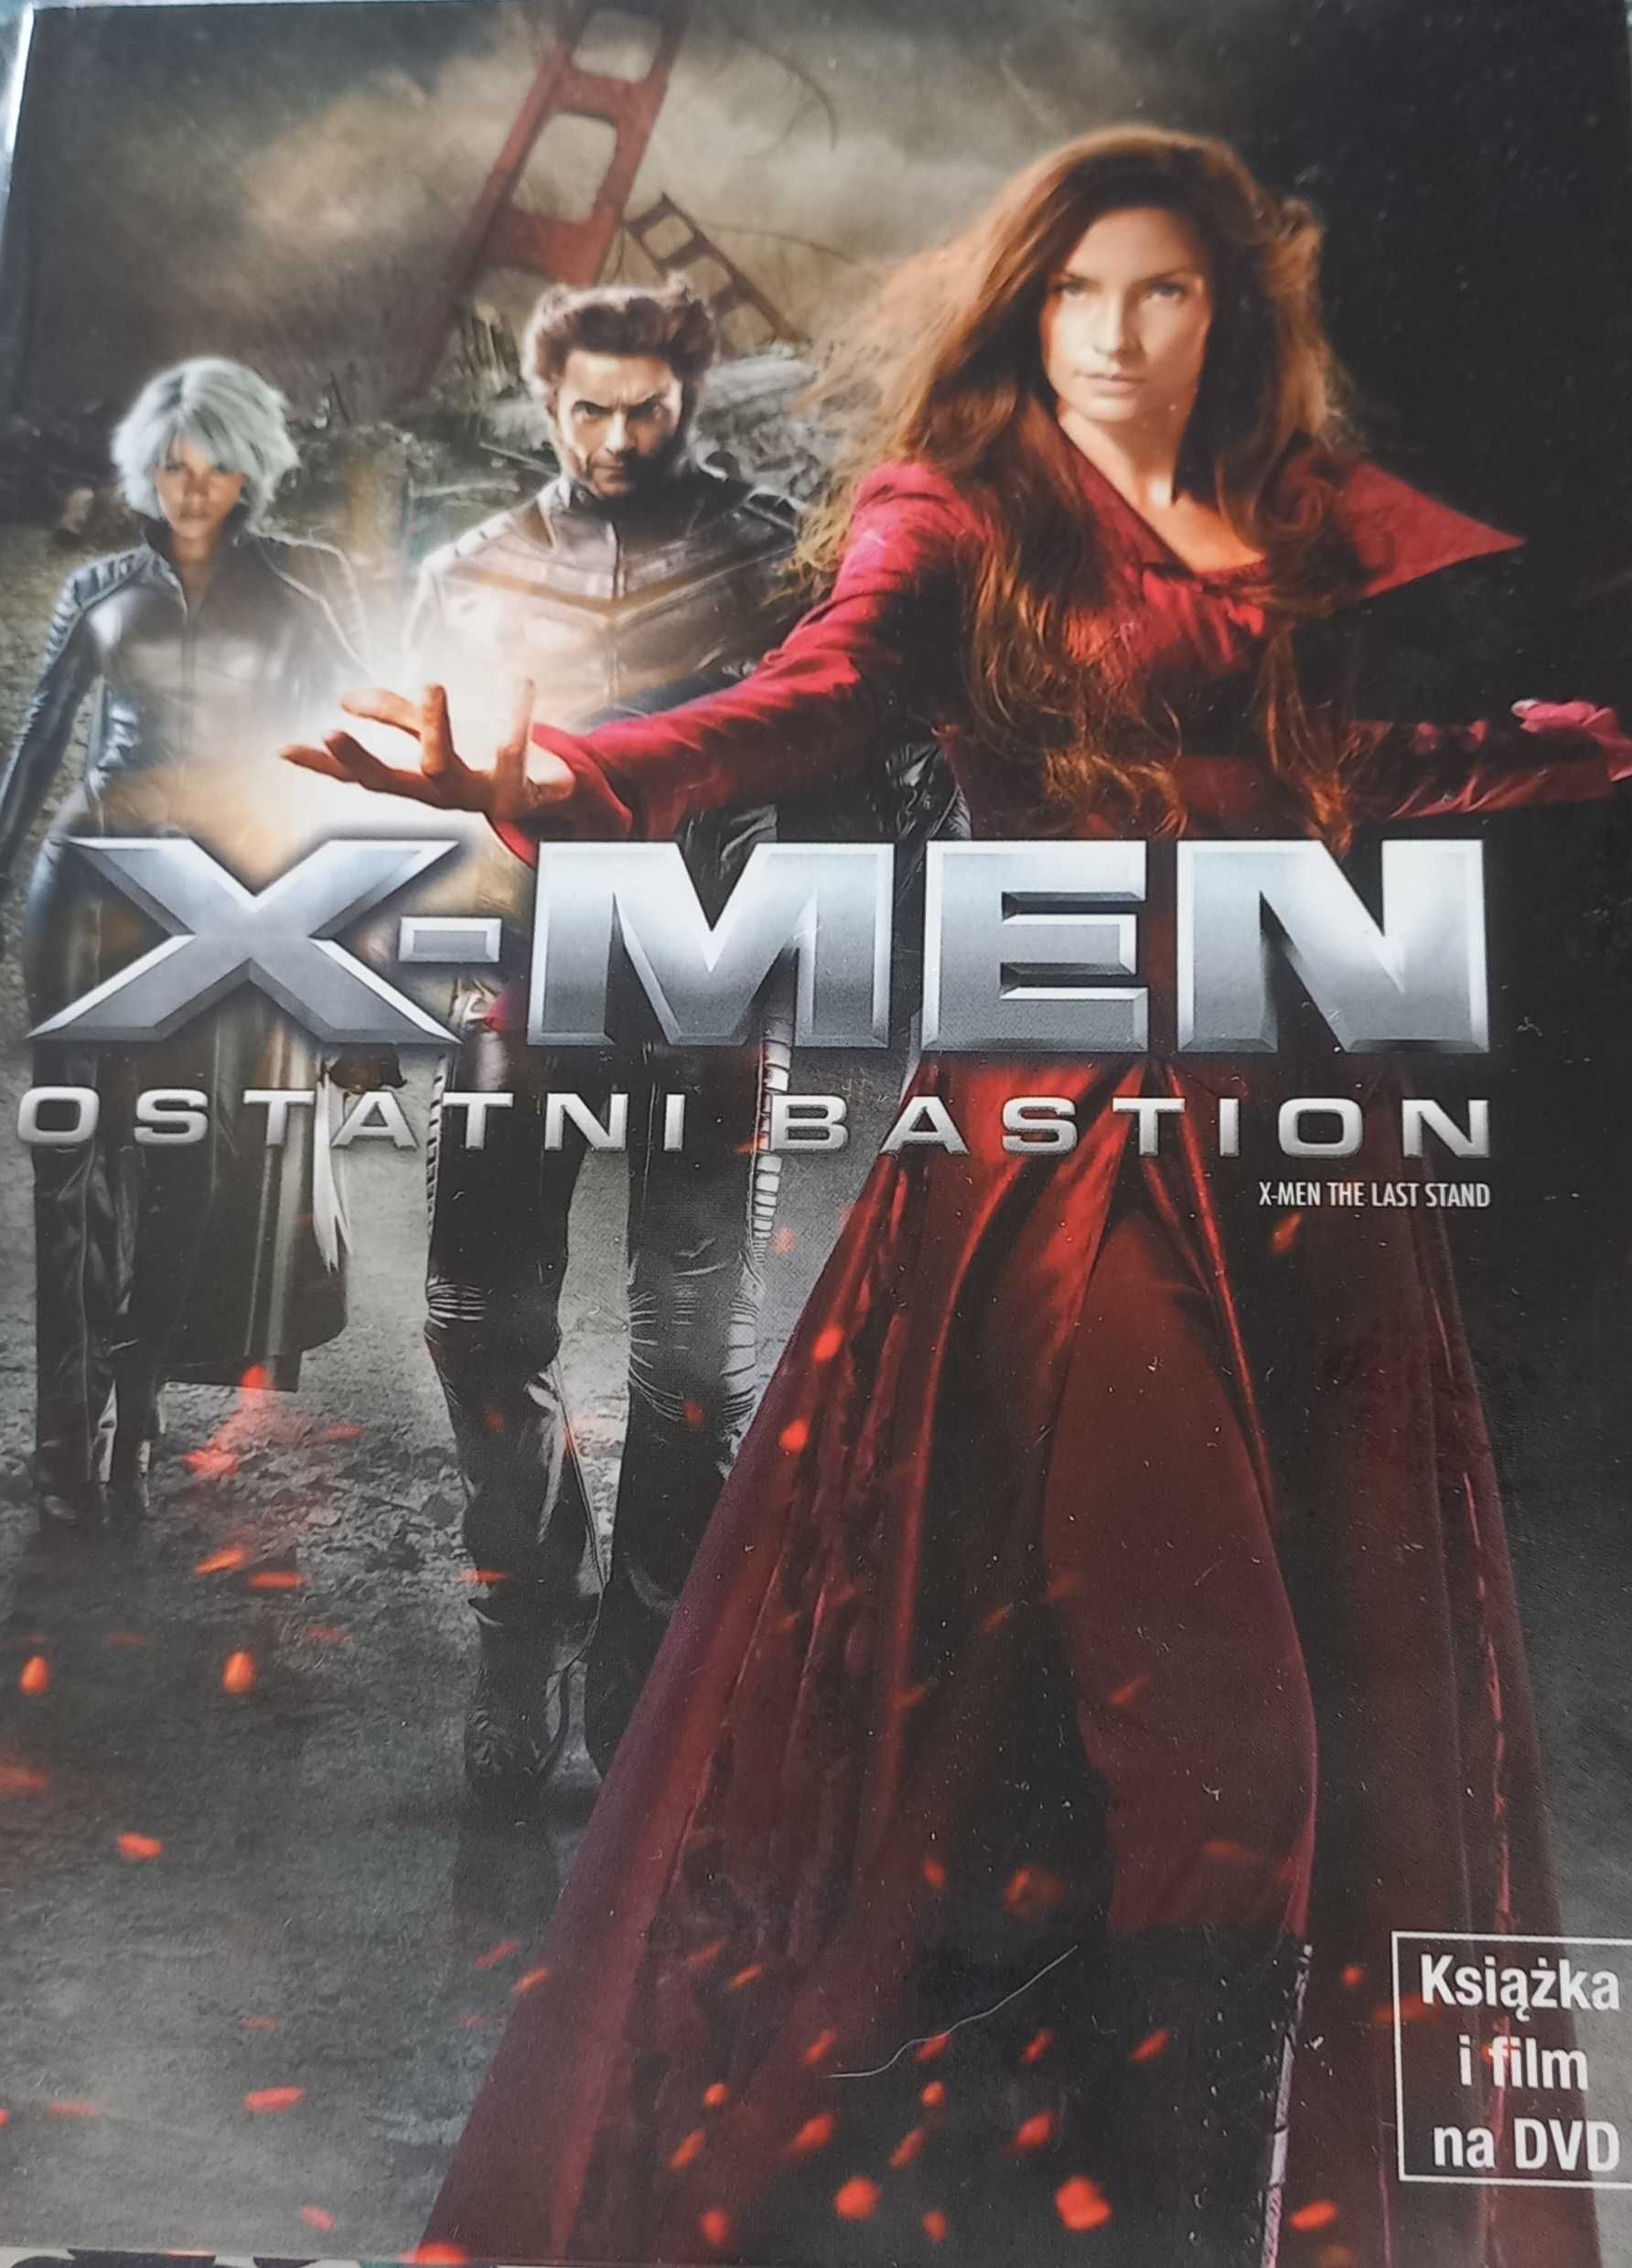 Film DVD X-men Ostatni Bastion